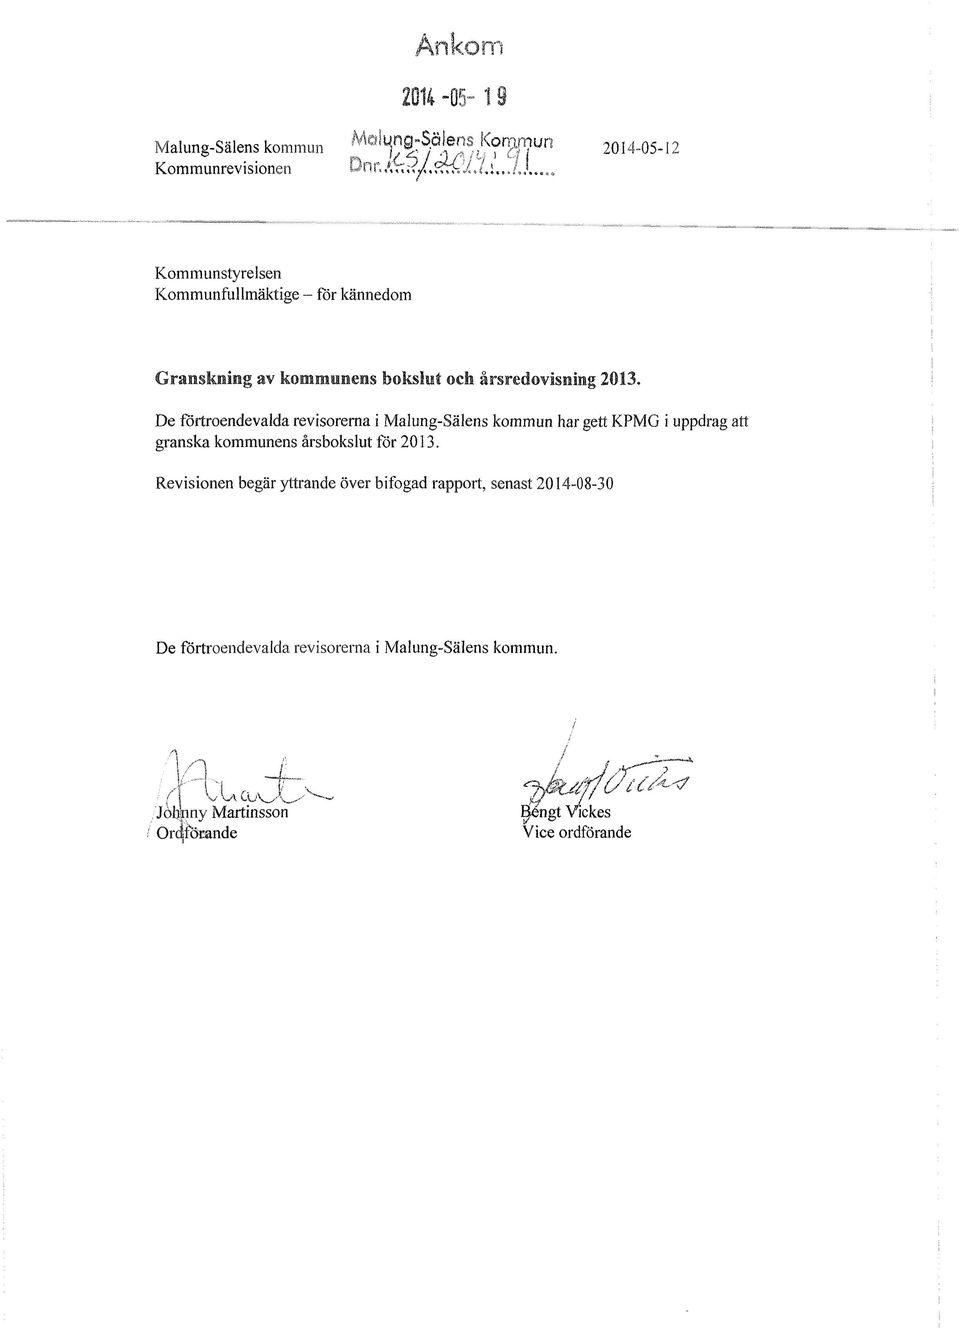 De förtroendevalda revisorerna i Malung-Sälens kommun har gett KPMG i uppdrag att granska kommunens årsbokslut för 2013.